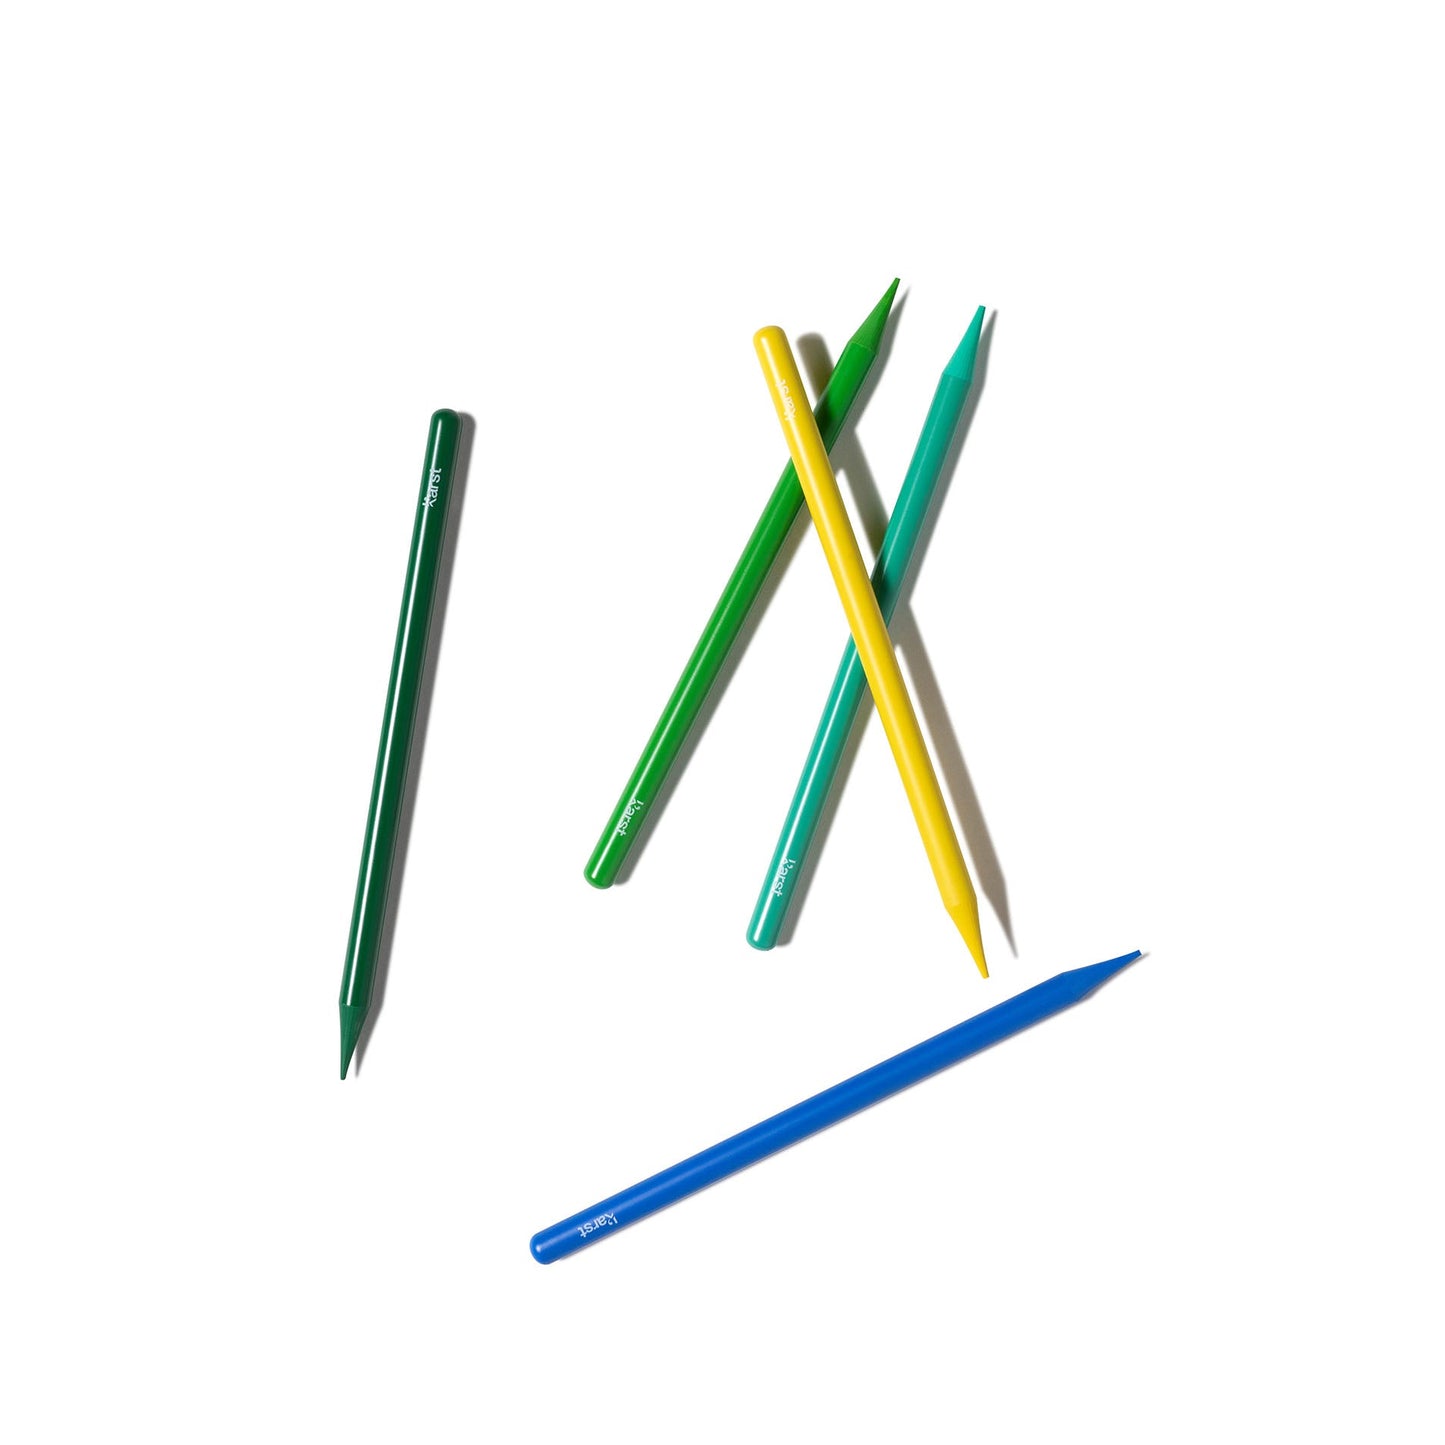 Karst - Woodless Artist Pencils - set of 12